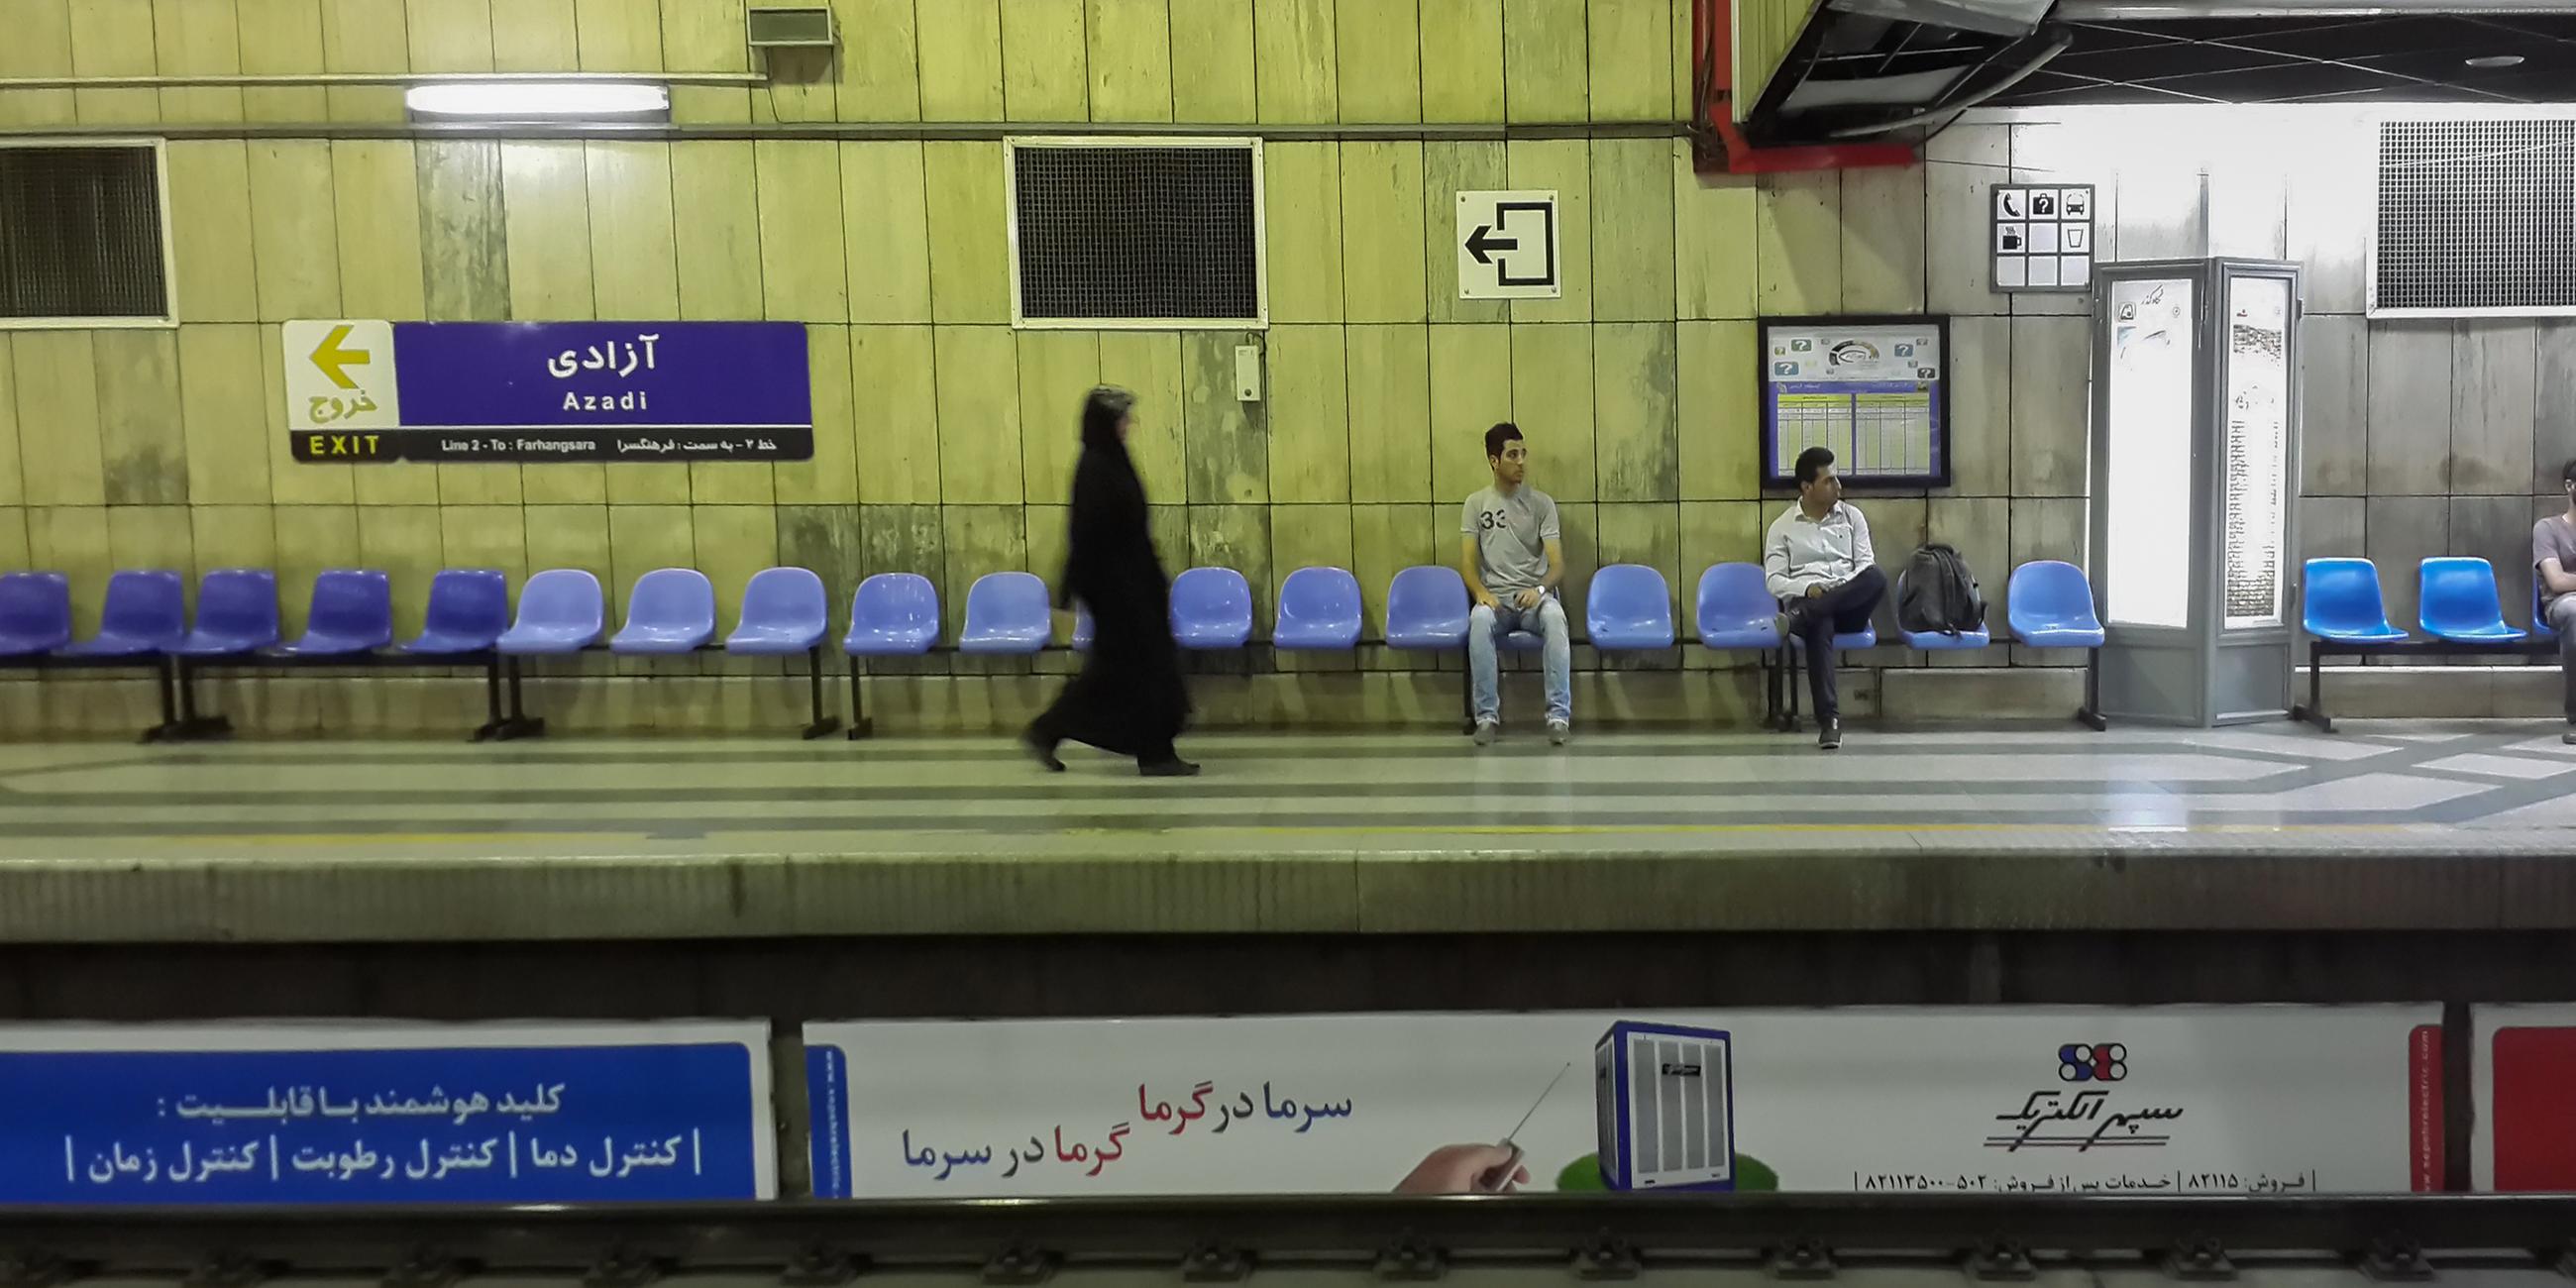 U-Bahn Station in Teheran, Iran.